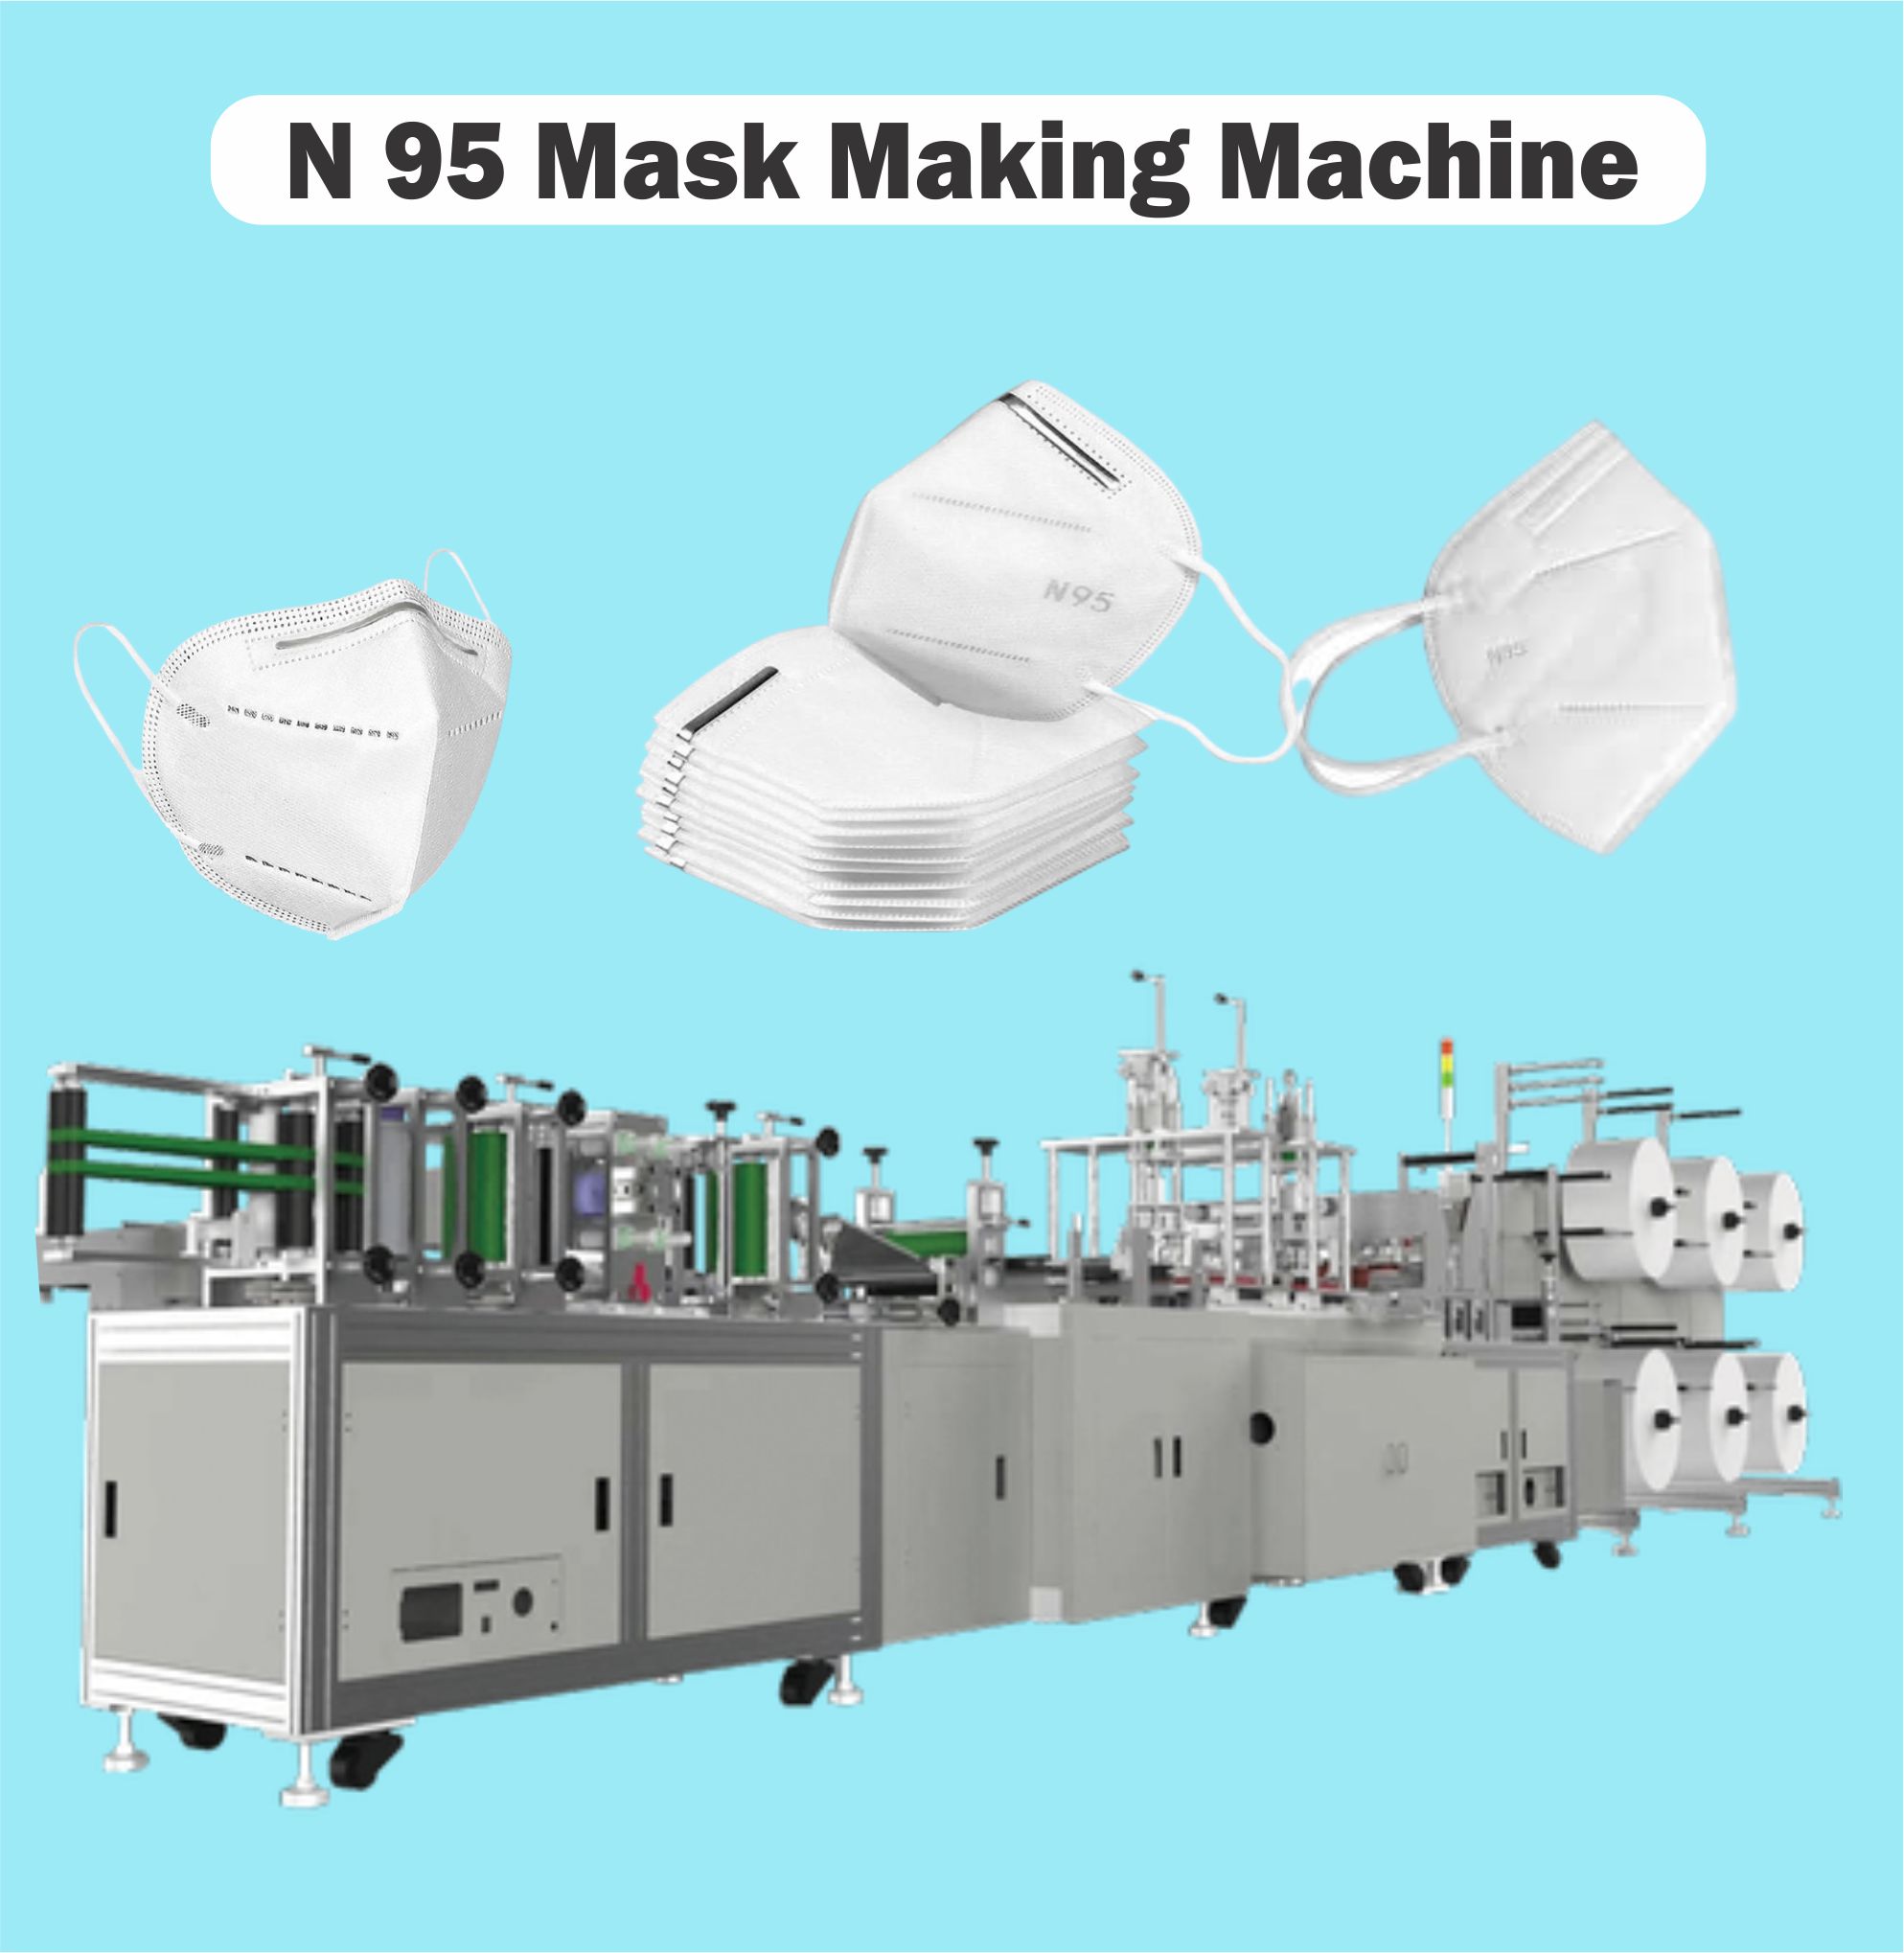 N95 Mask Making Machine